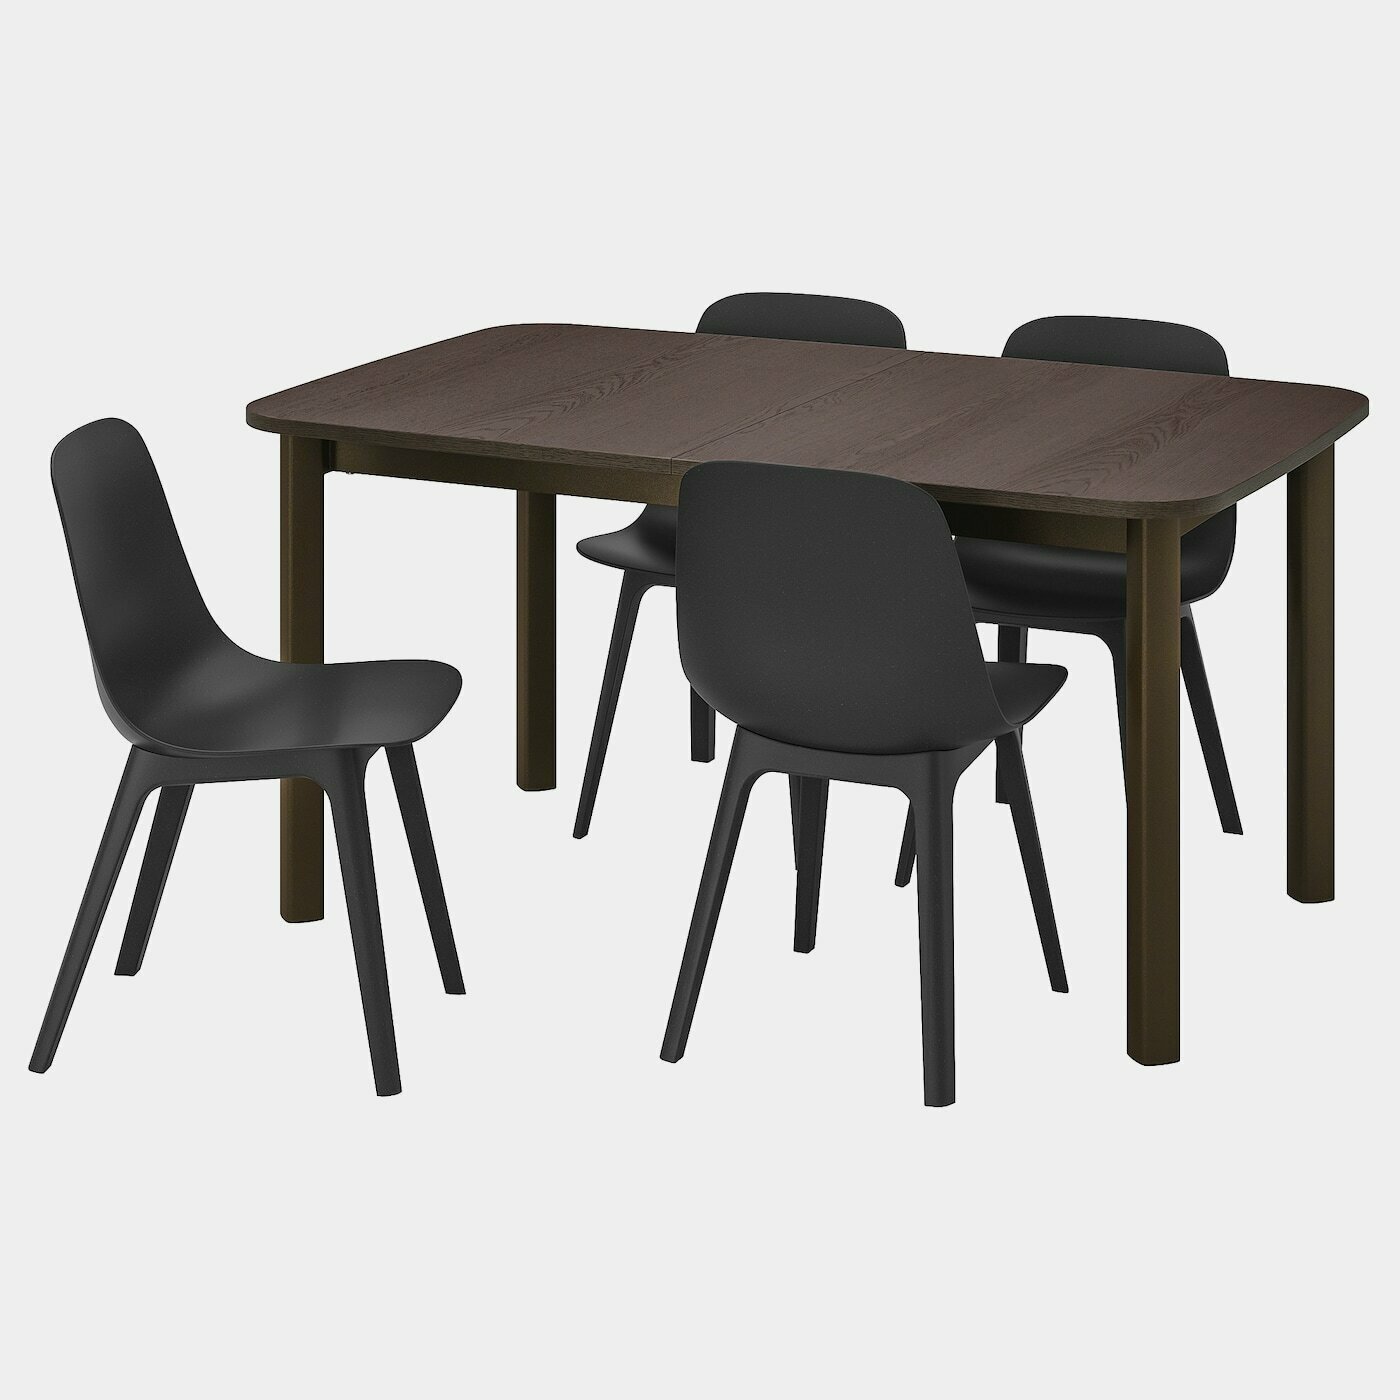 STRANDTORP / ODGER Tisch und 4 Stühle  -  - Möbel Ideen für dein Zuhause von Home Trends. Möbel Trends von Social Media Influencer für dein Skandi Zuhause.